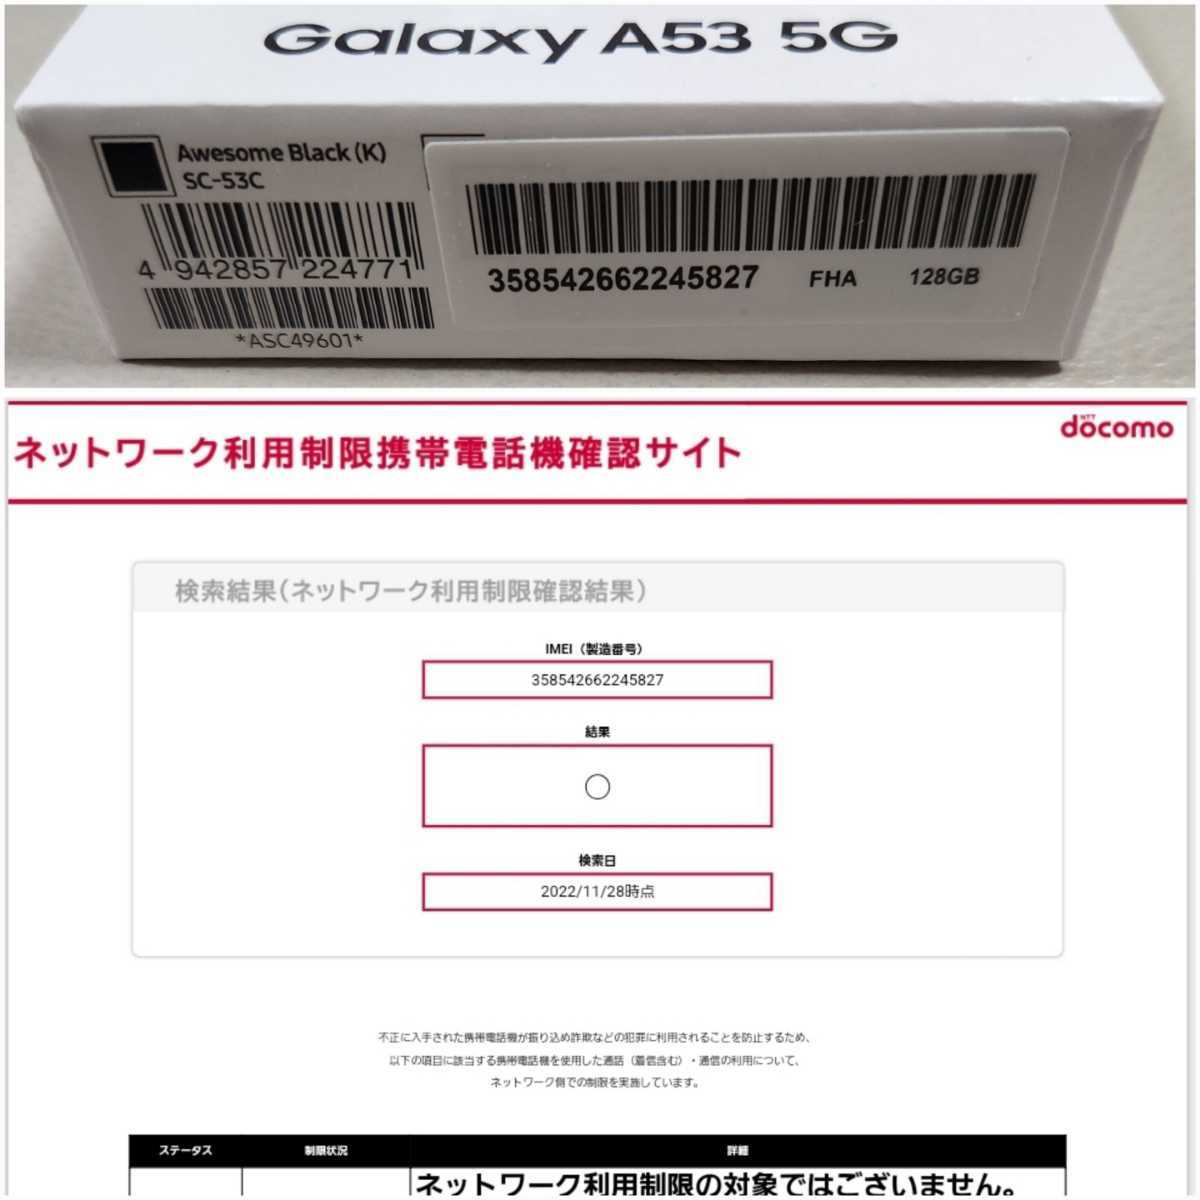 [ unused ]NTT DoCoMo Samsung Galaxy A53 5G SC-53C(Awesome Black|o- Sam